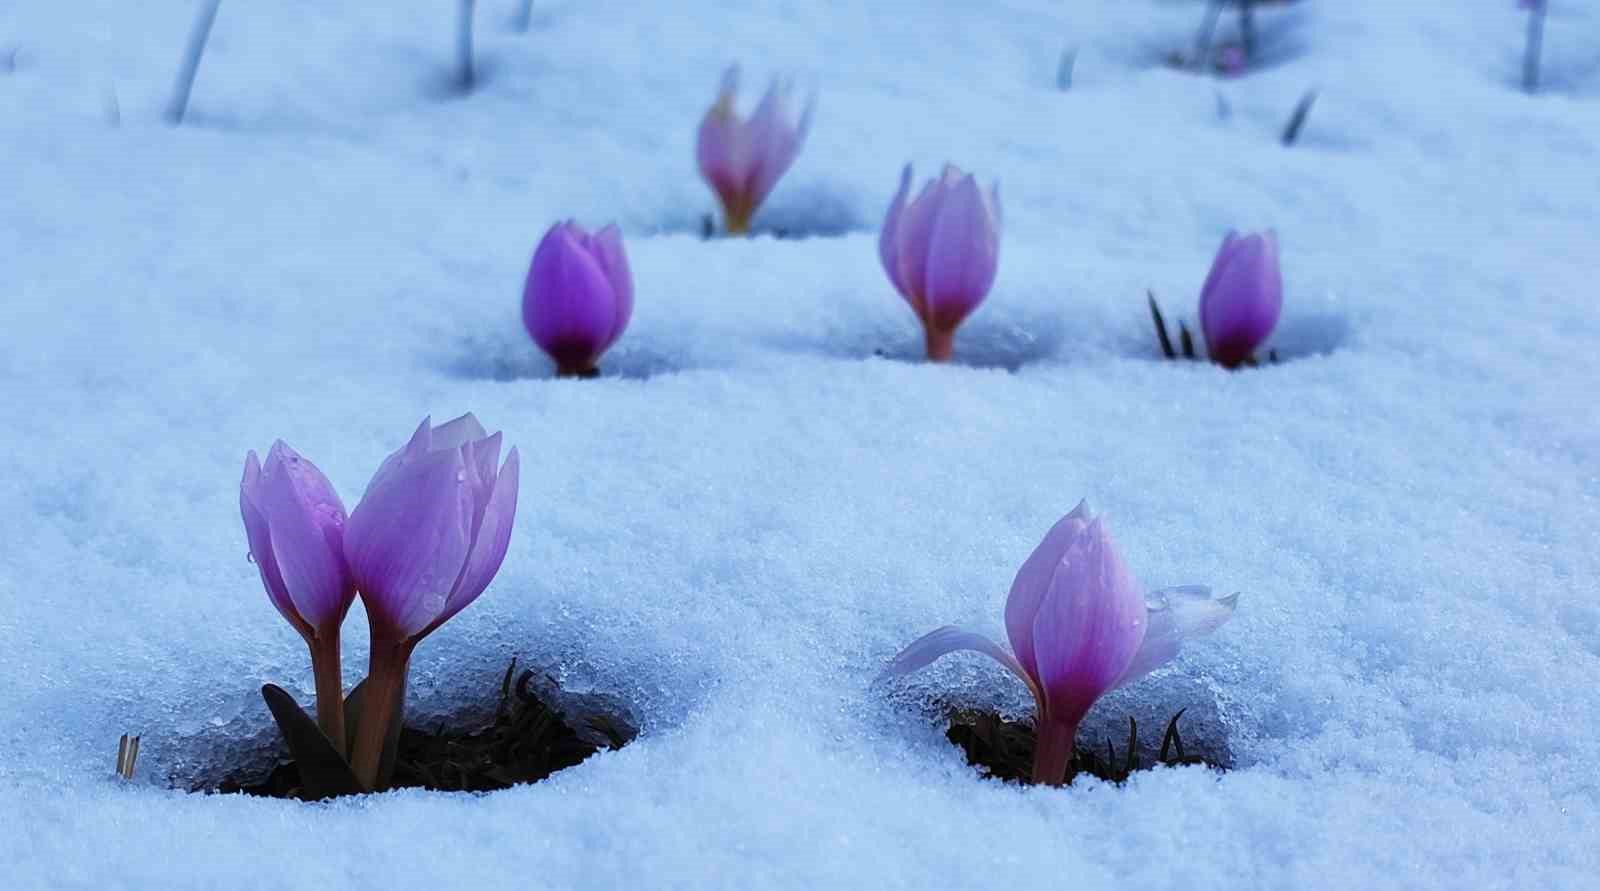 Karlar altındaki çiğdem çiçeklerinden kartpostallık görüntüler
